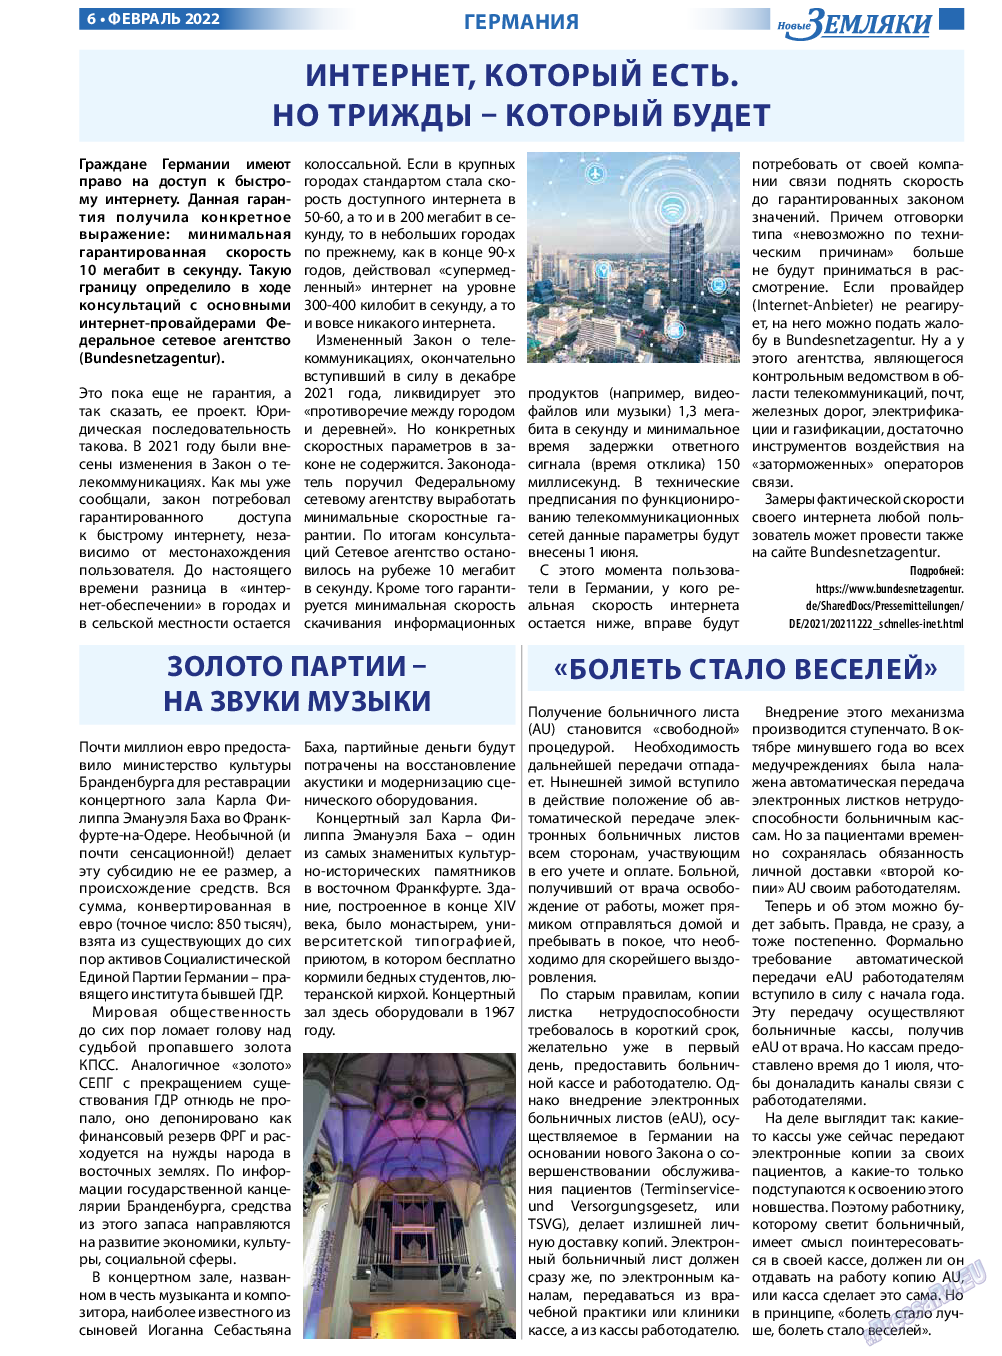 Новые Земляки, газета. 2022 №2 стр.6